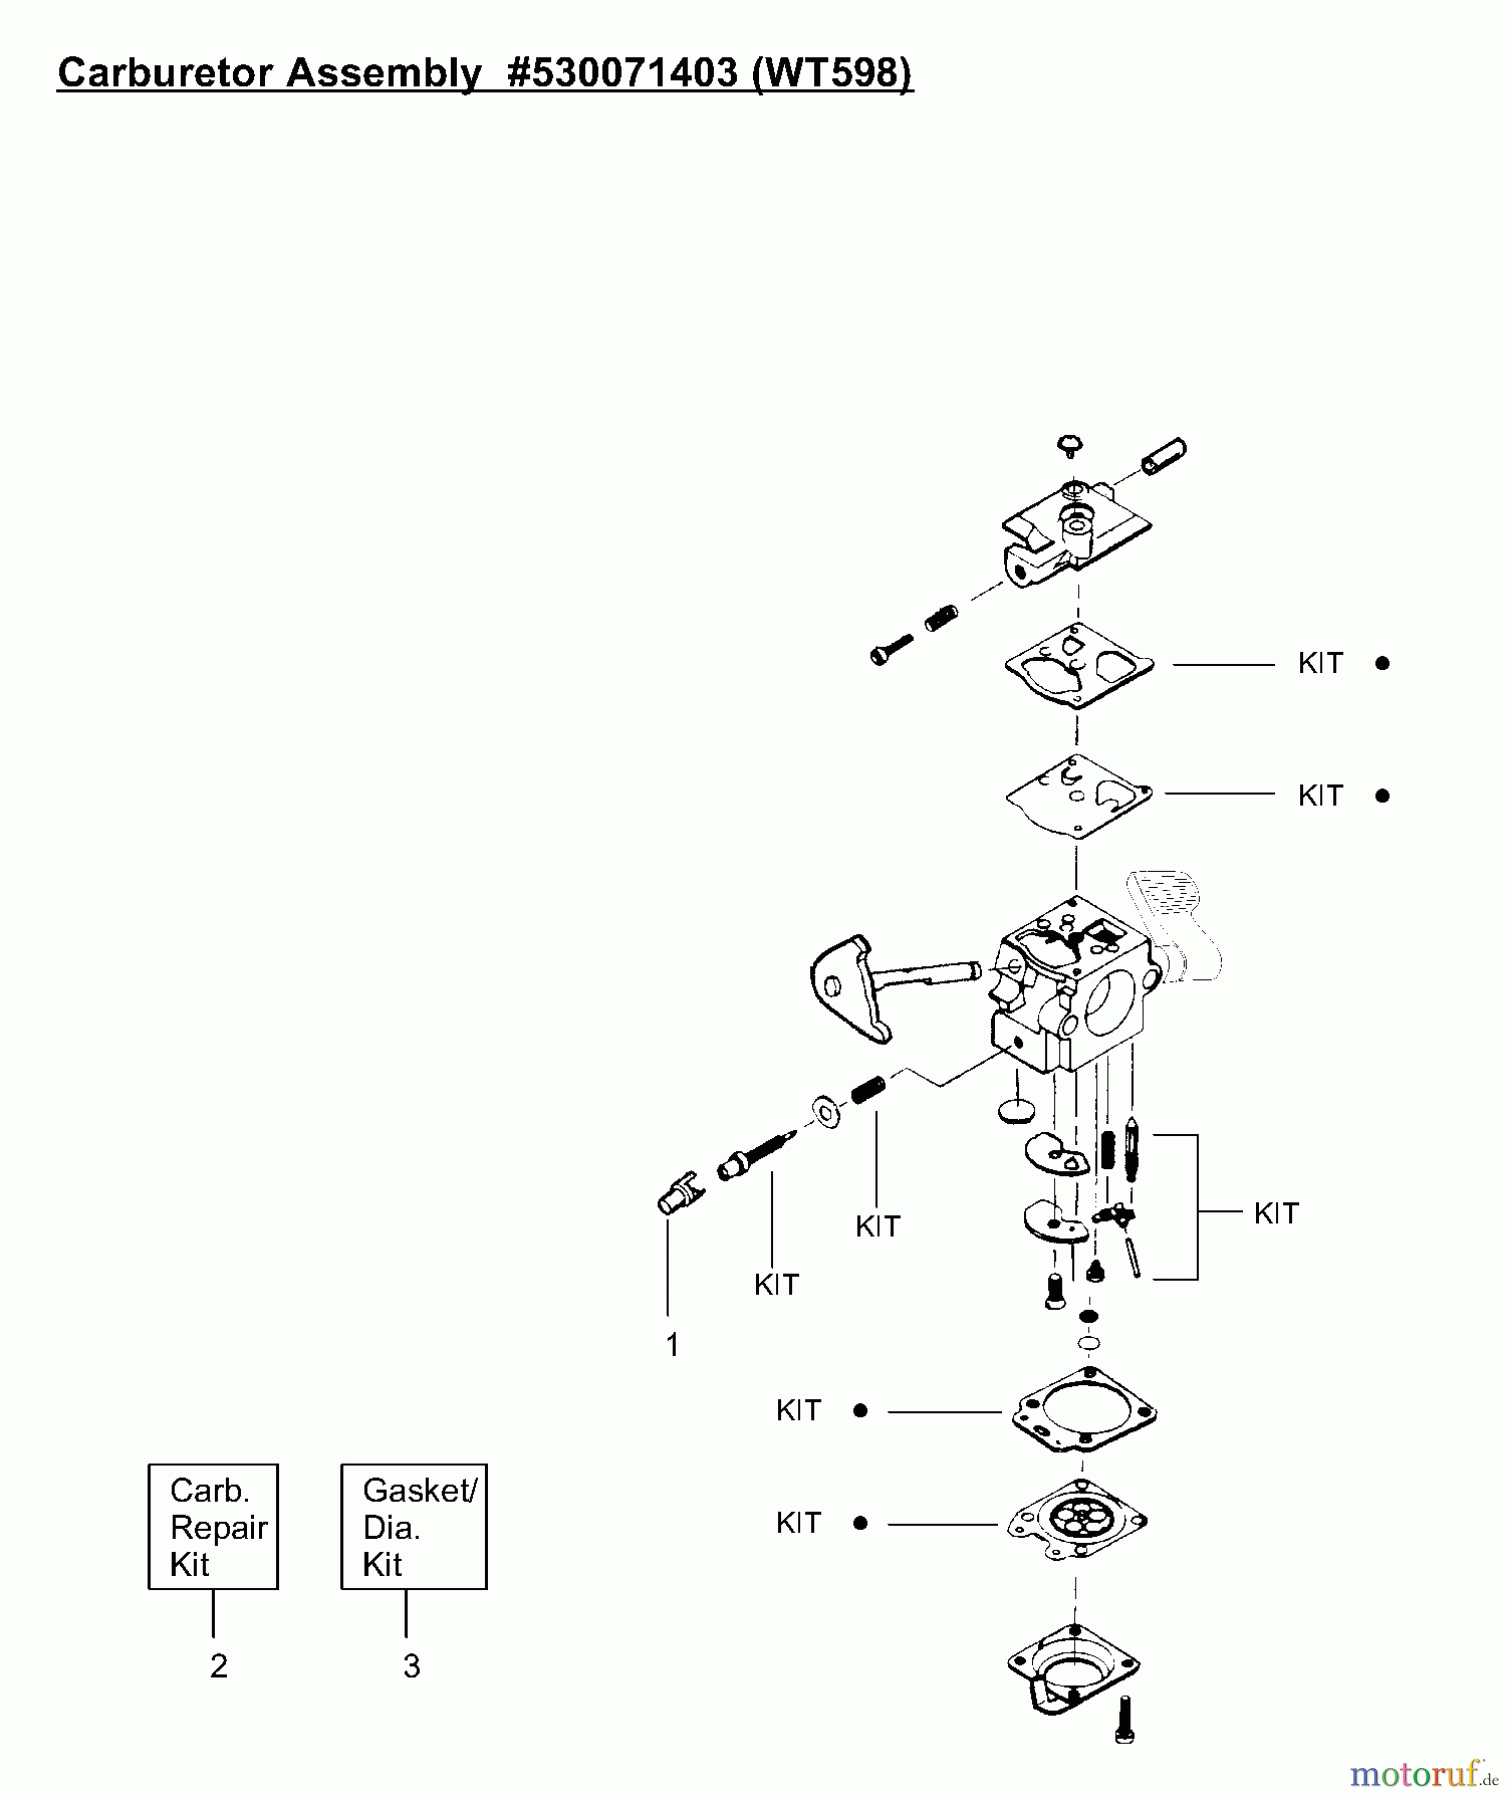  Poulan / Weed Eater Motorsensen, Trimmer PP131 - Poulan Pro String Trimmer Carburetor Assembly (WT598) P/N 530071403